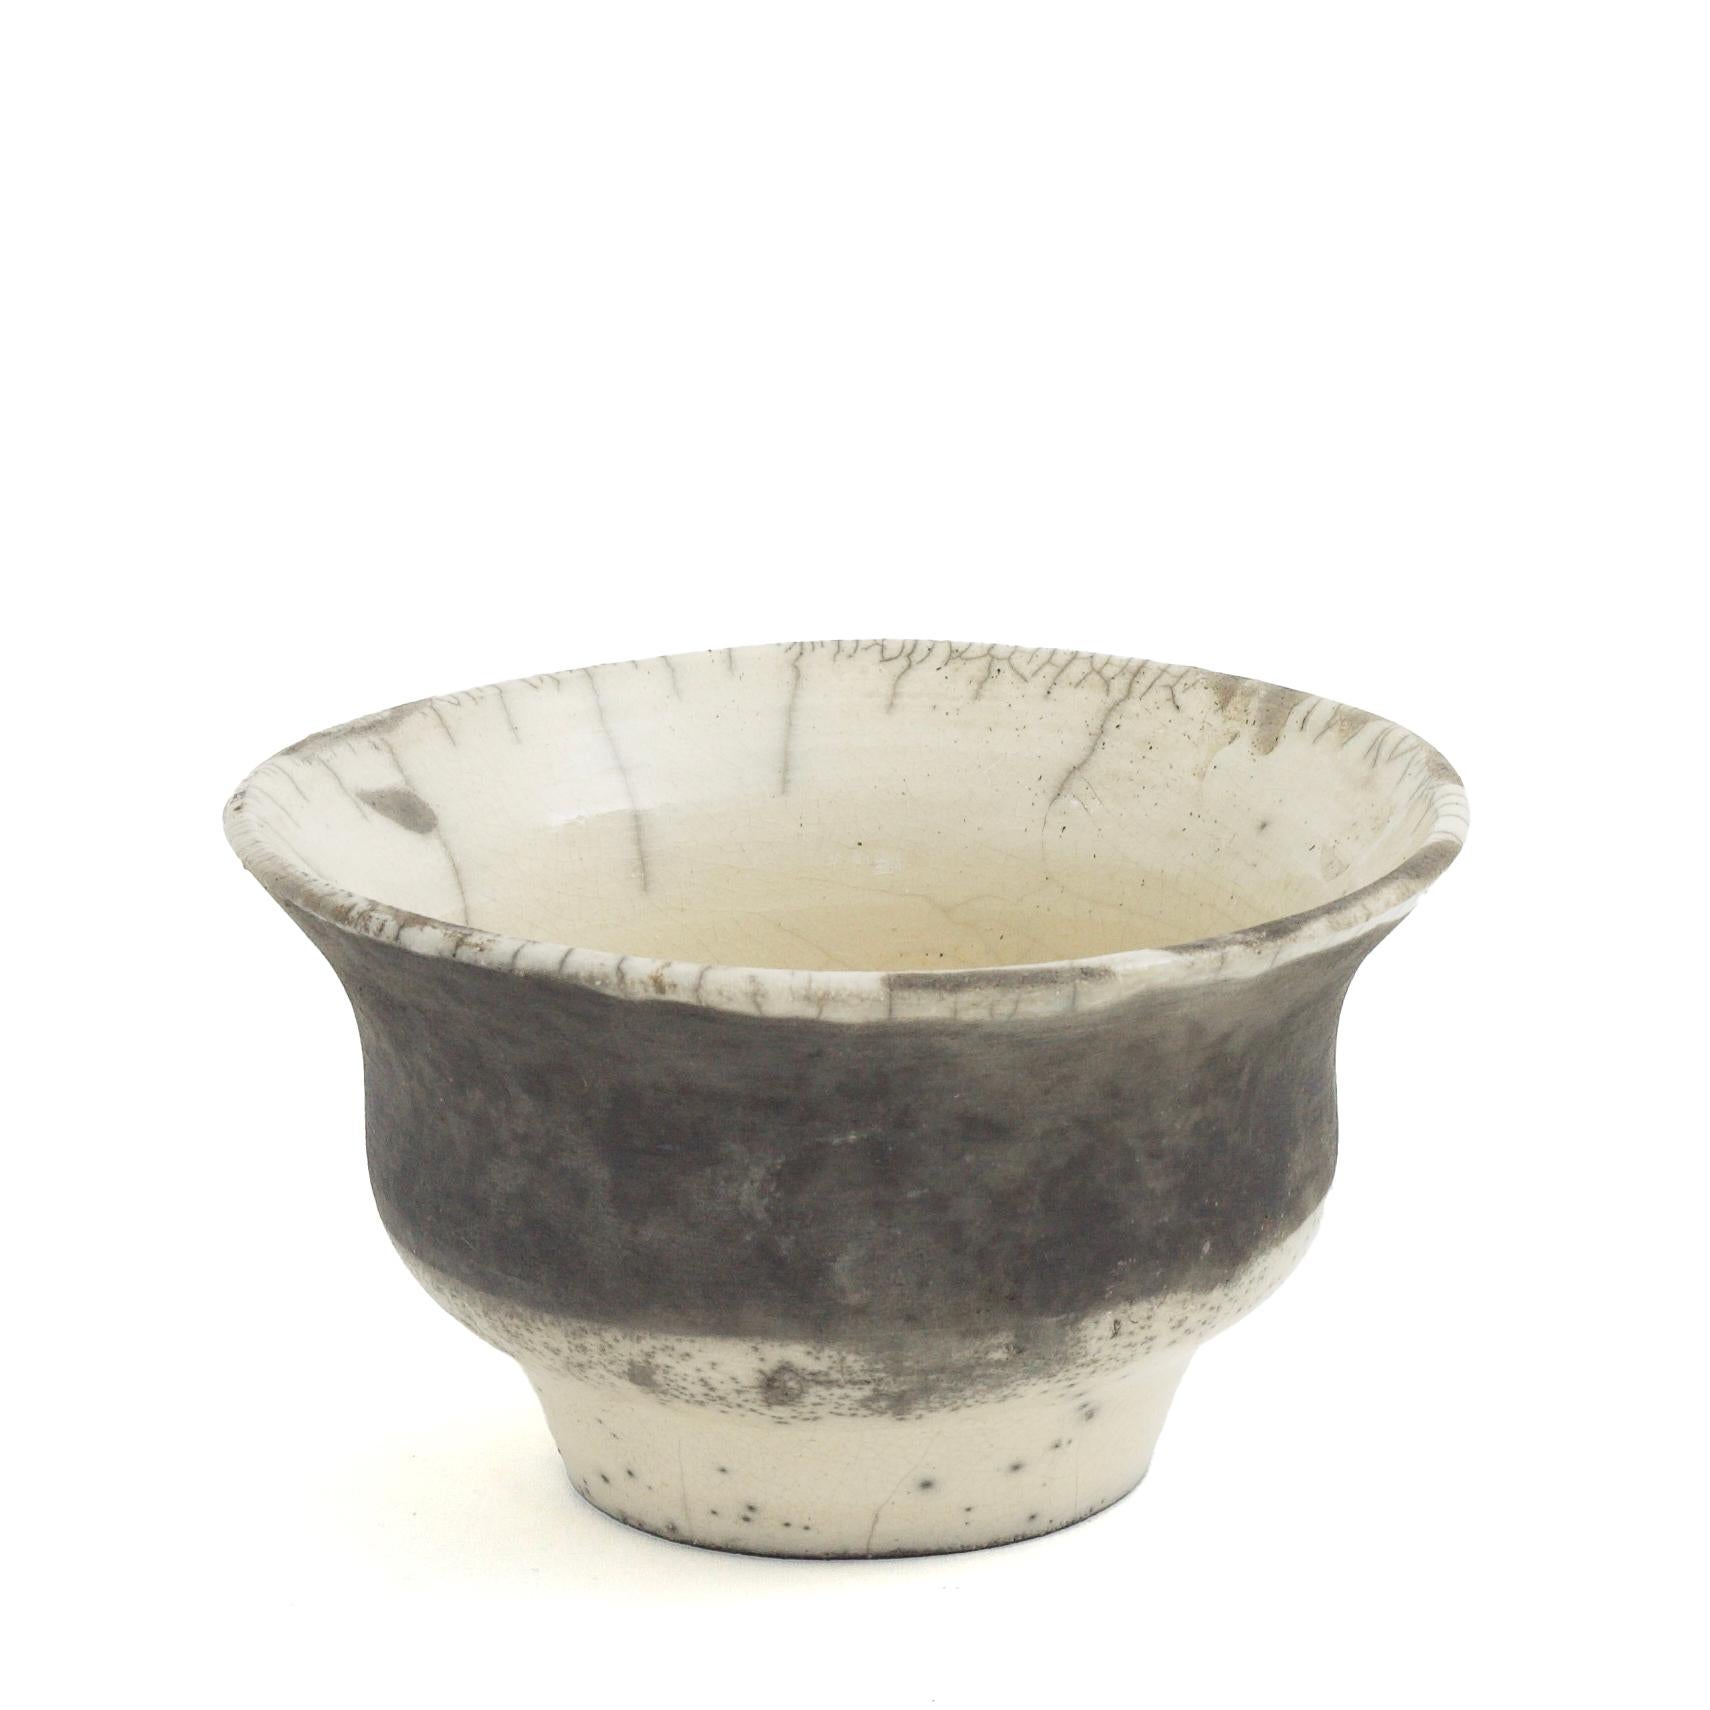 Vase Patto

Marqué par des courbes sinueuses soulignant un profil évasé, ce vase unique en son genre a été fabriqué à la main en céramique selon l'ancienne technique japonaise de poterie Raku, ce qui donne lieu à des craquelures distinctives dont